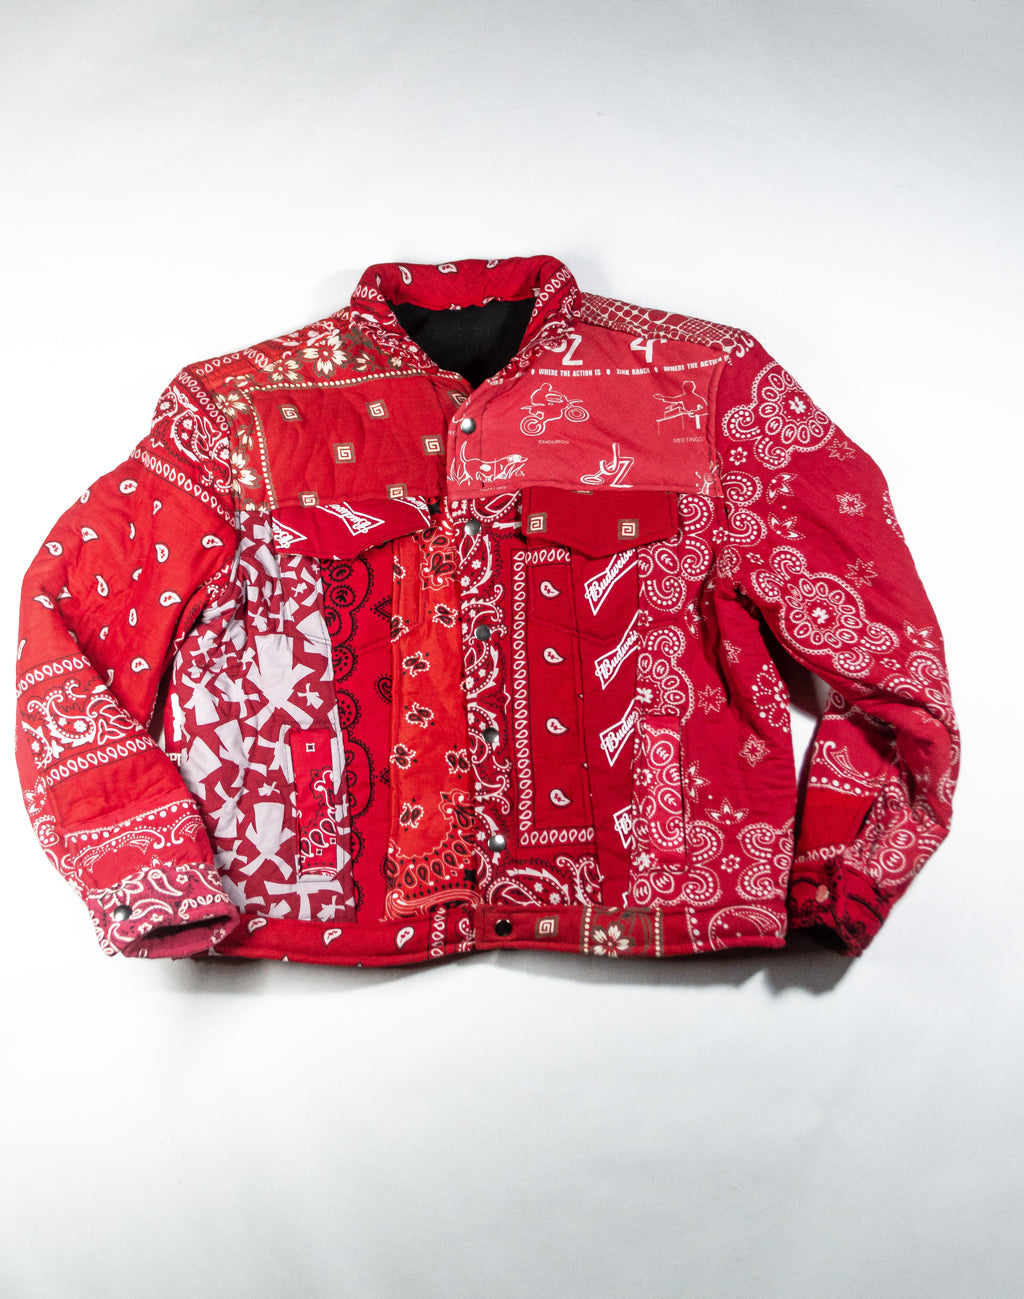 Red Bandana jacket